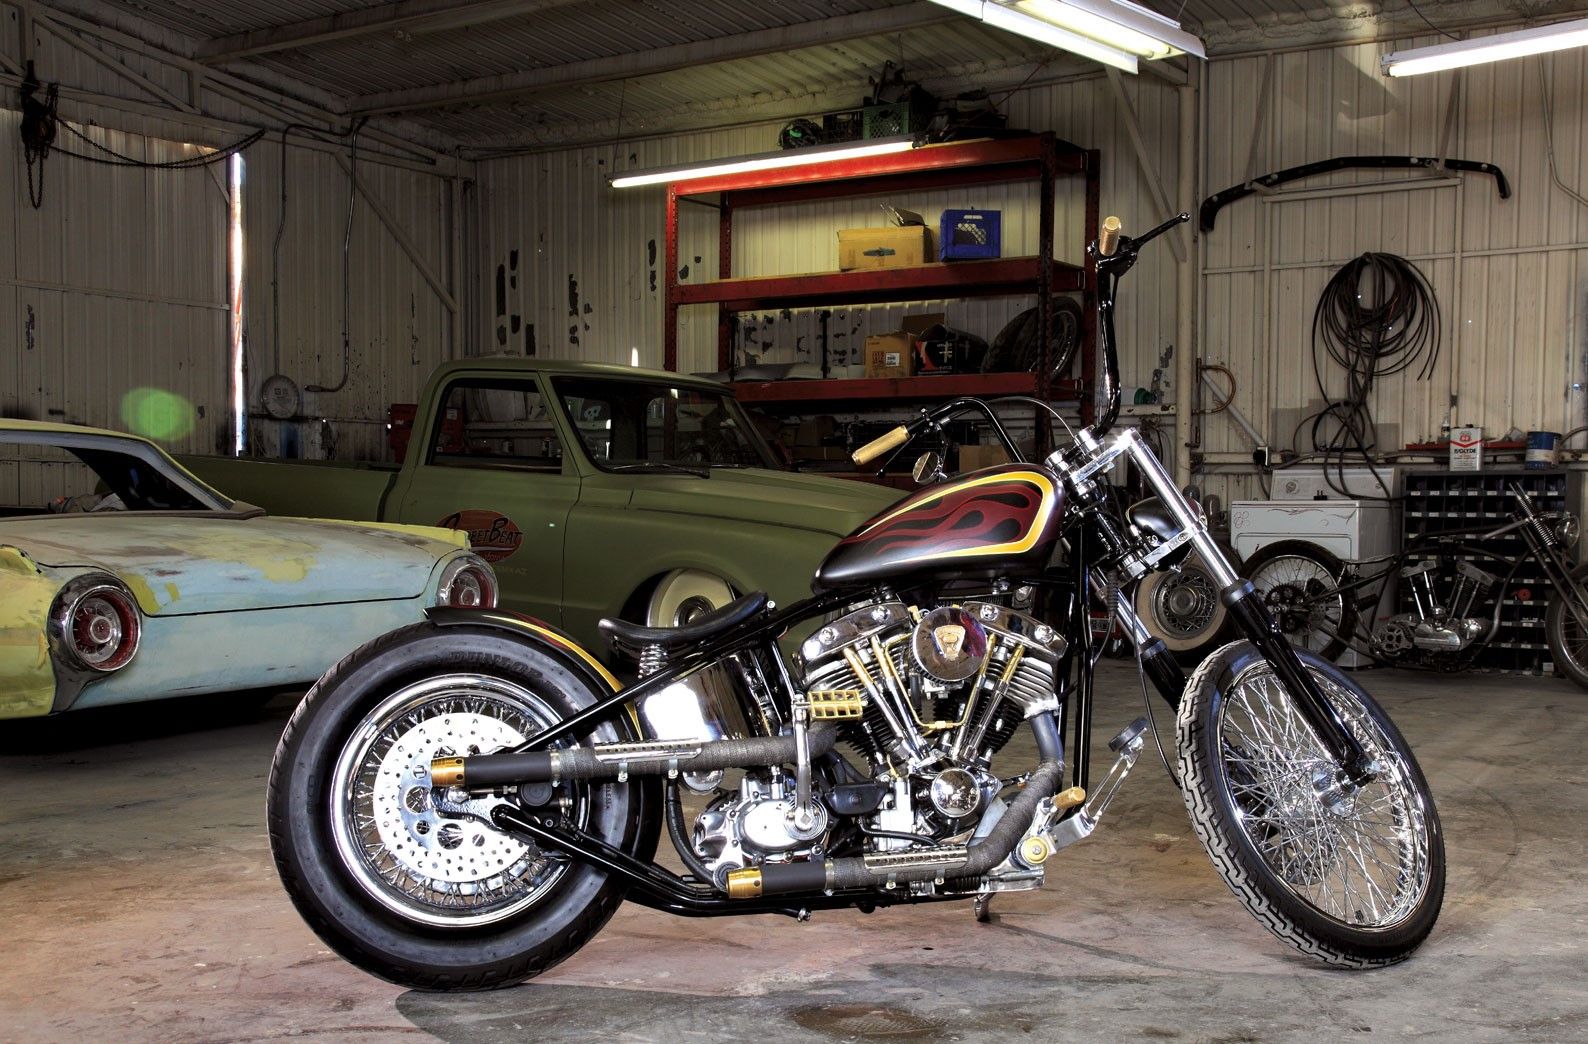 Harley Davidson FLH Shovelhead at a vintage yard